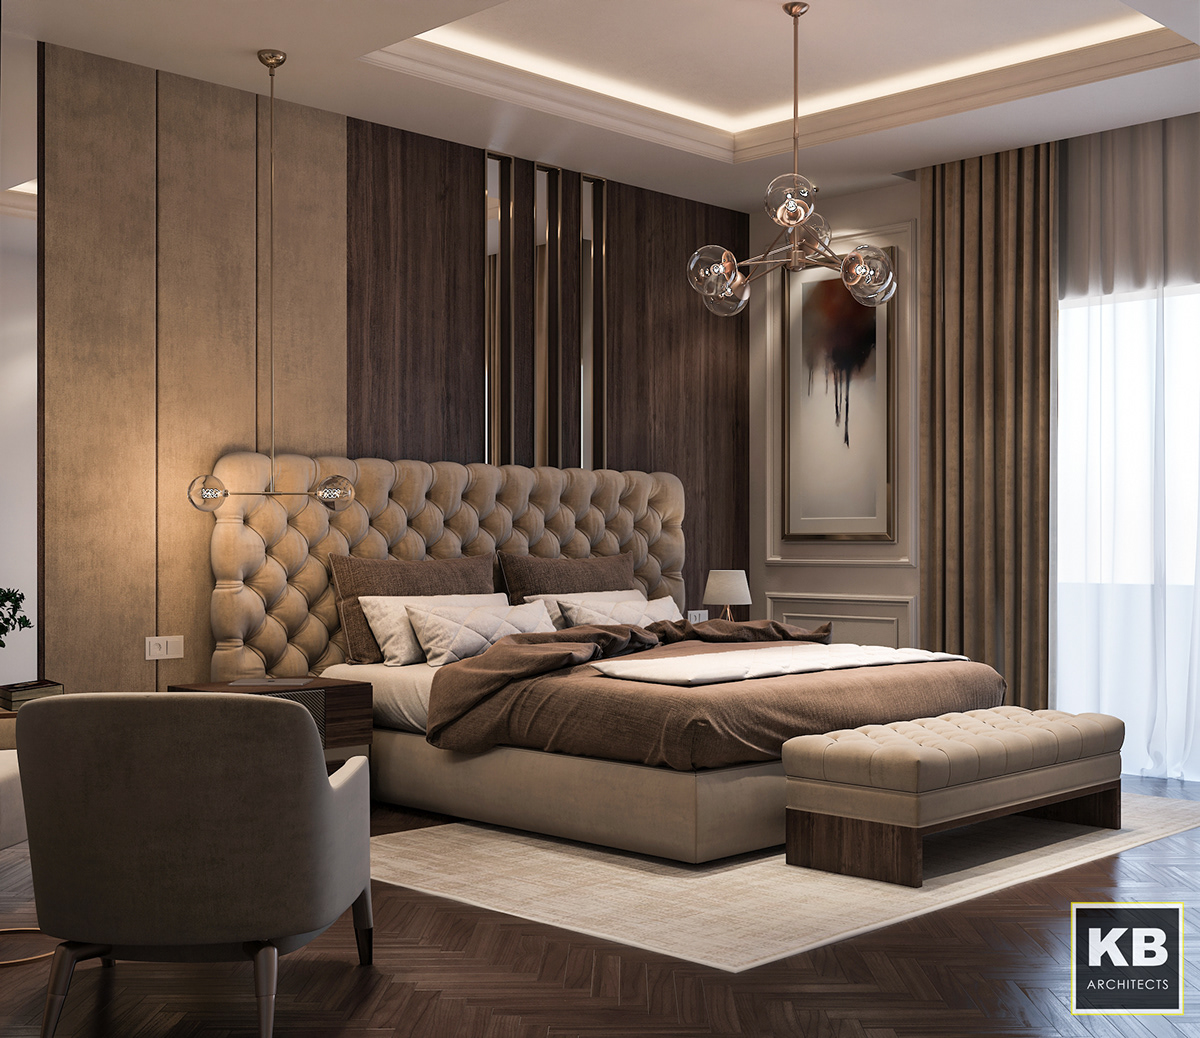 contemporary Interior bedroom decor interiordesign Masterbedroom  elegance